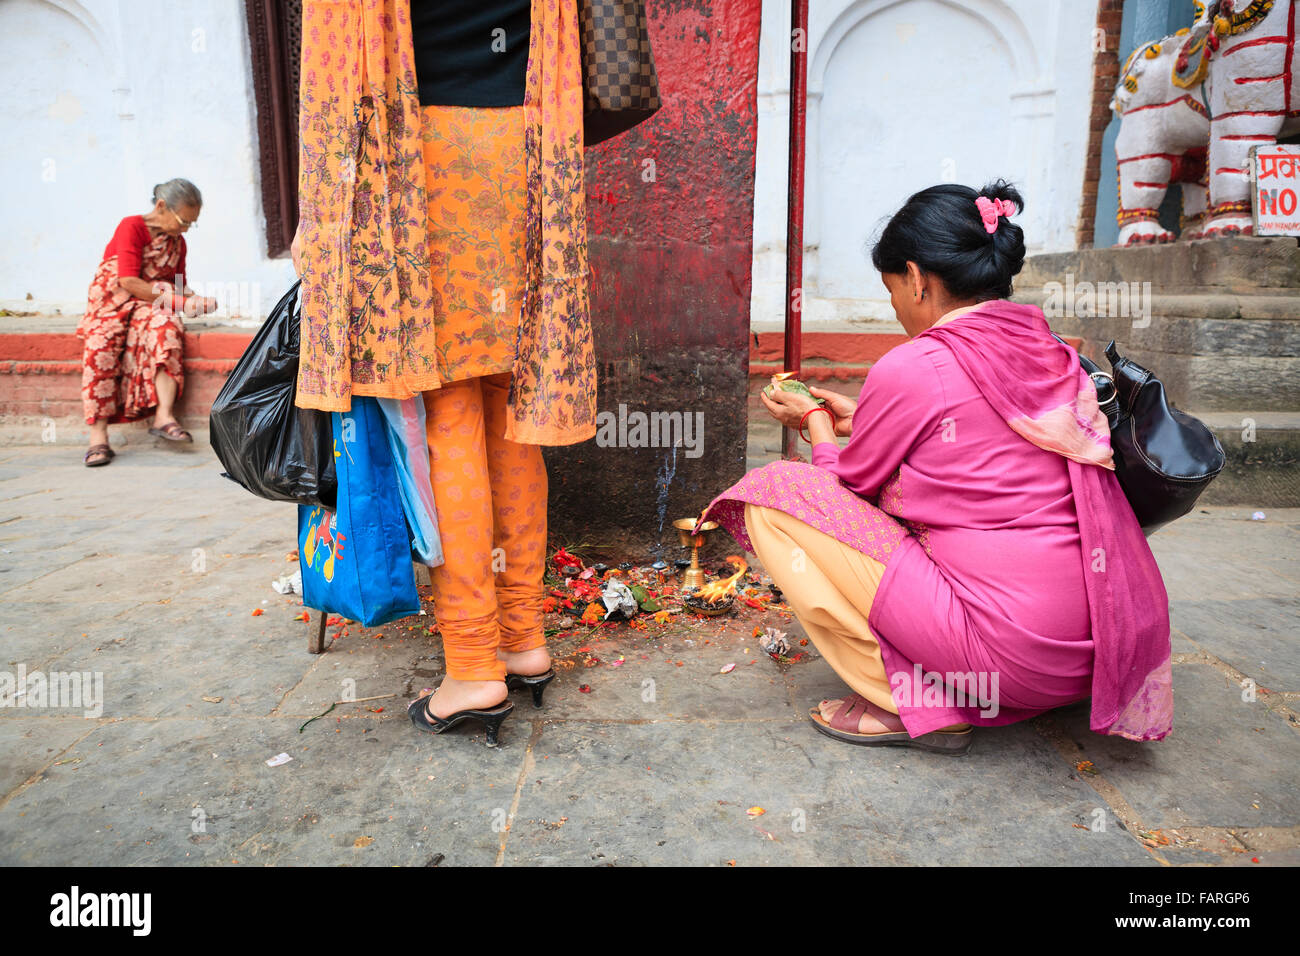 Women making offerings at Durbar Square. Kathmandu. Nepal. Stock Photo